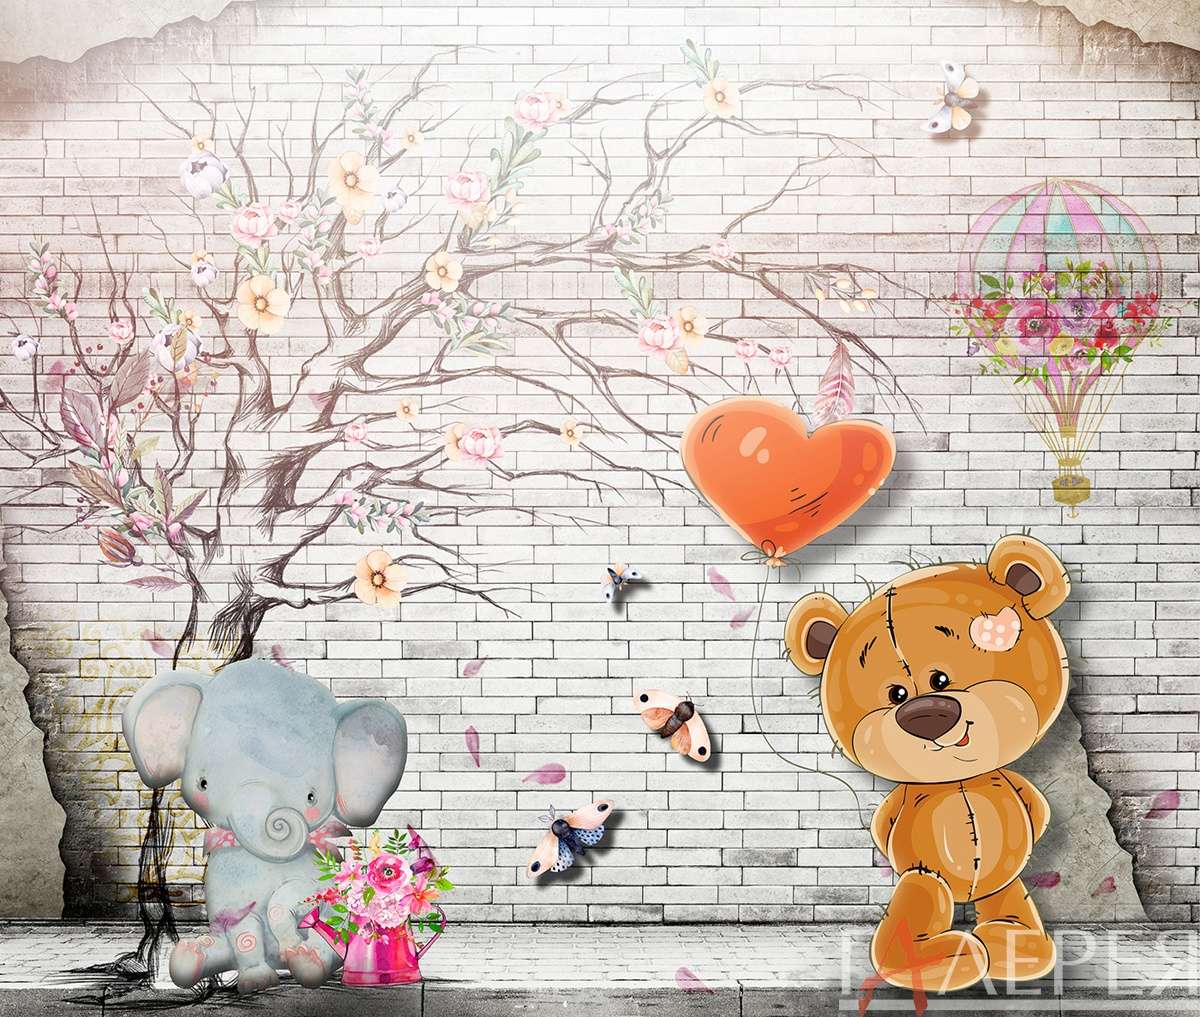 стена, кирпичная стена, рисунок, дерево, воздушный шар, мишка, медведь, слоник, слон, цветы, бабочки